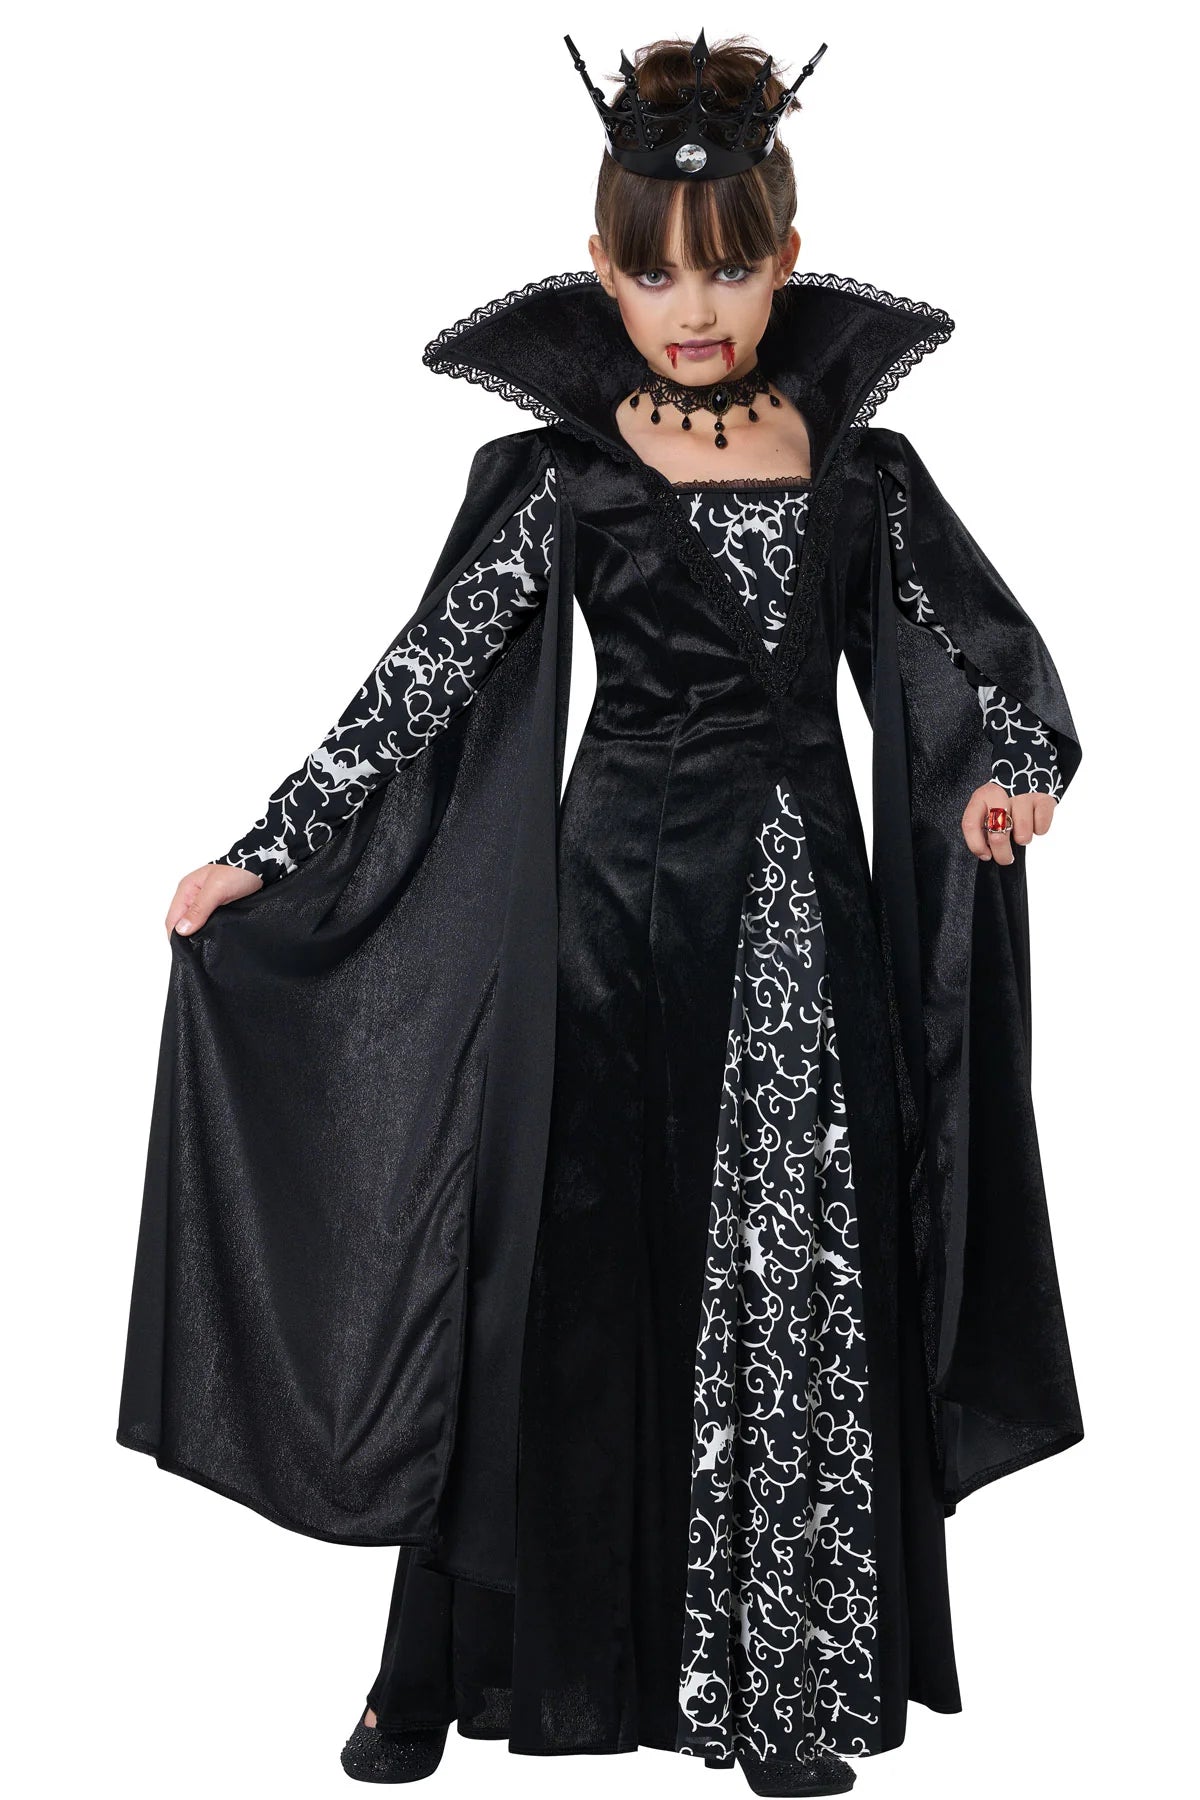 Vampire Queen Deluxe Costume - Child